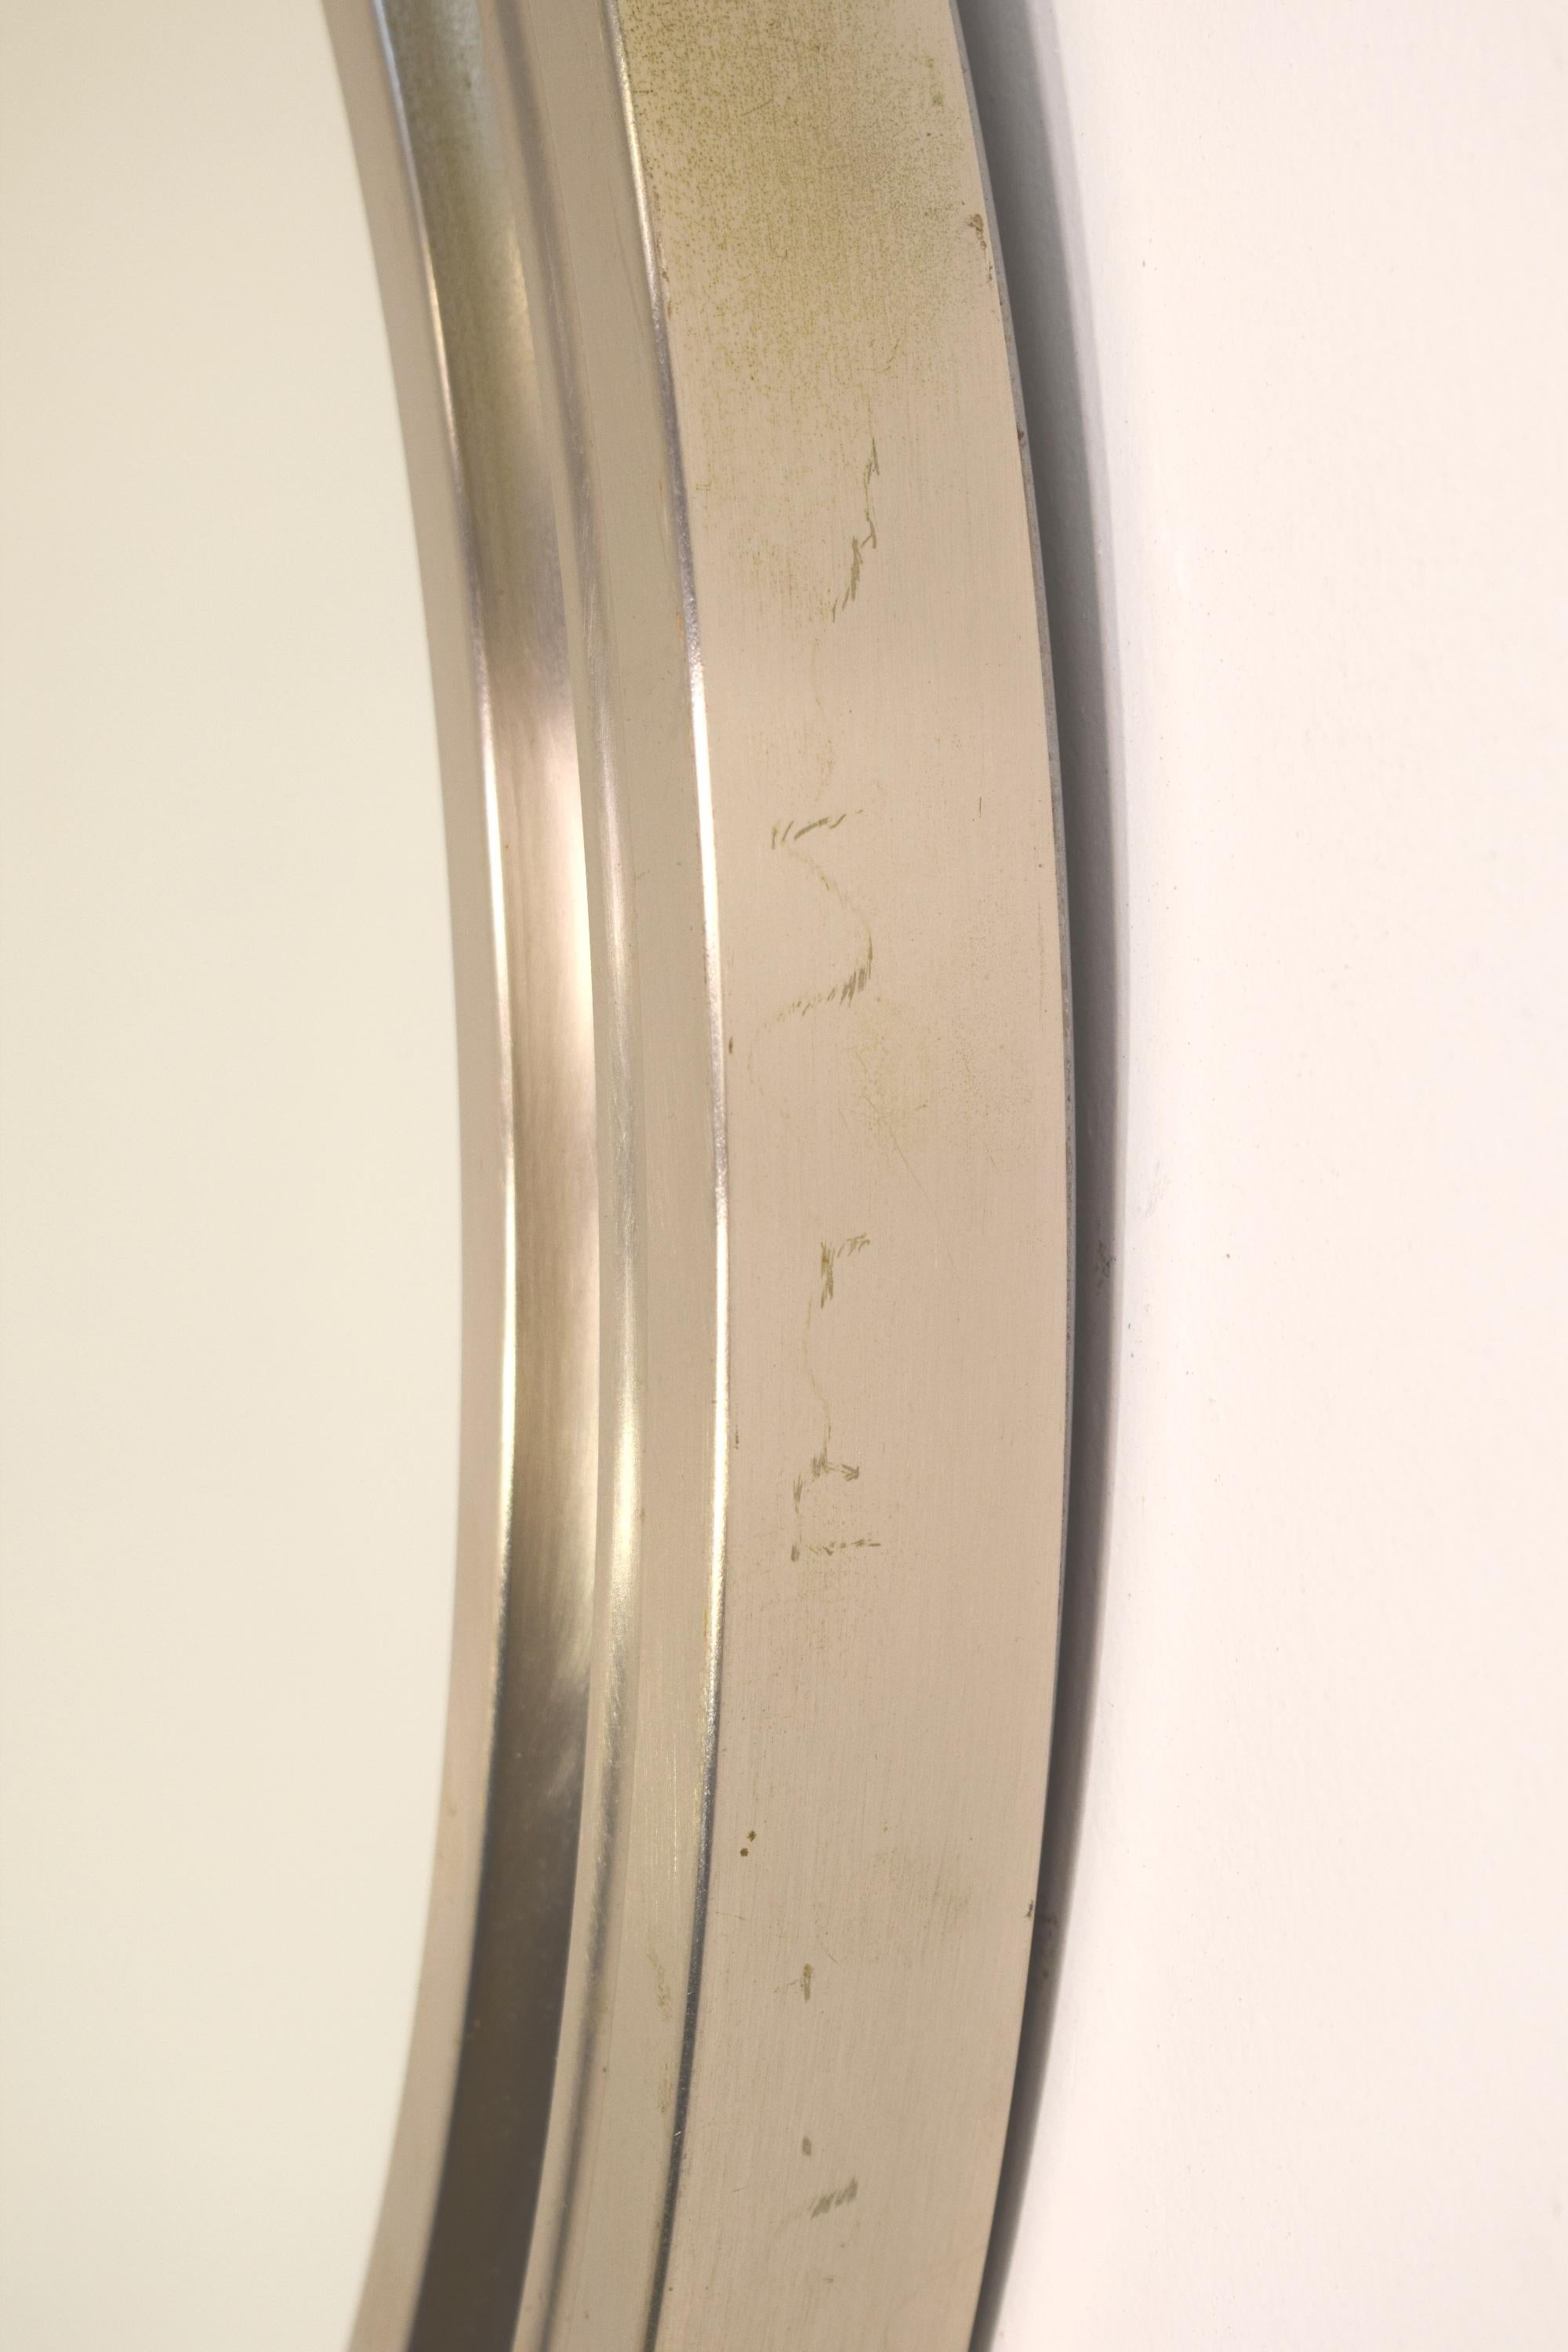 Italian round mirror by Sergio Mazza, 1960s.
Dimensions: H= 4 cm; D= 58 cm.